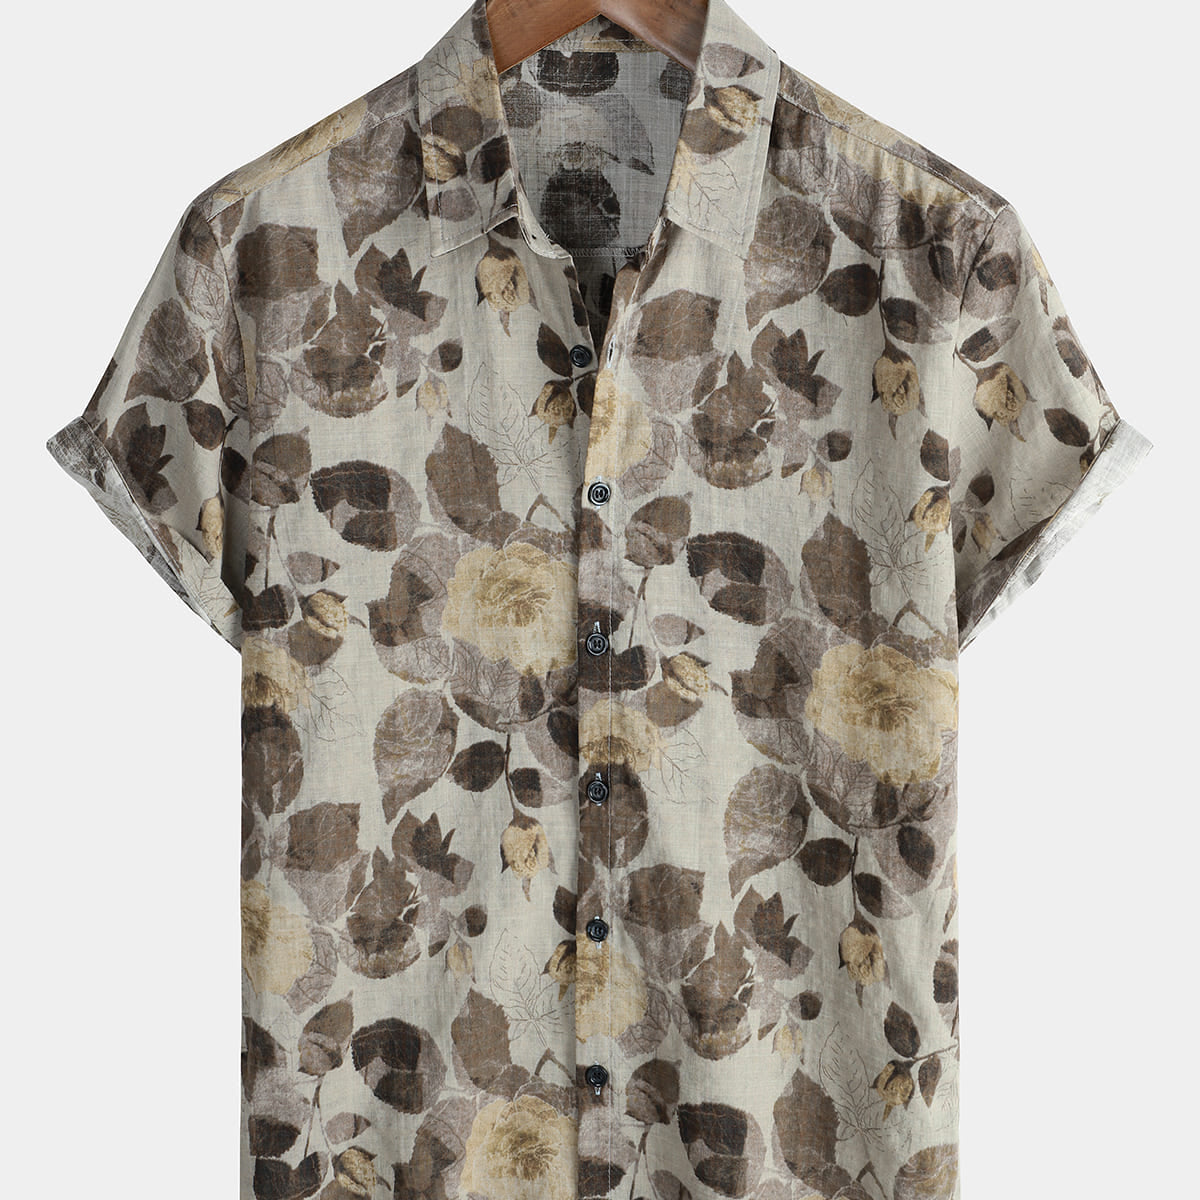 Chemise boutonnée en coton à manches courtes pour hommes, Vintage, à fleurs, rétro, plage